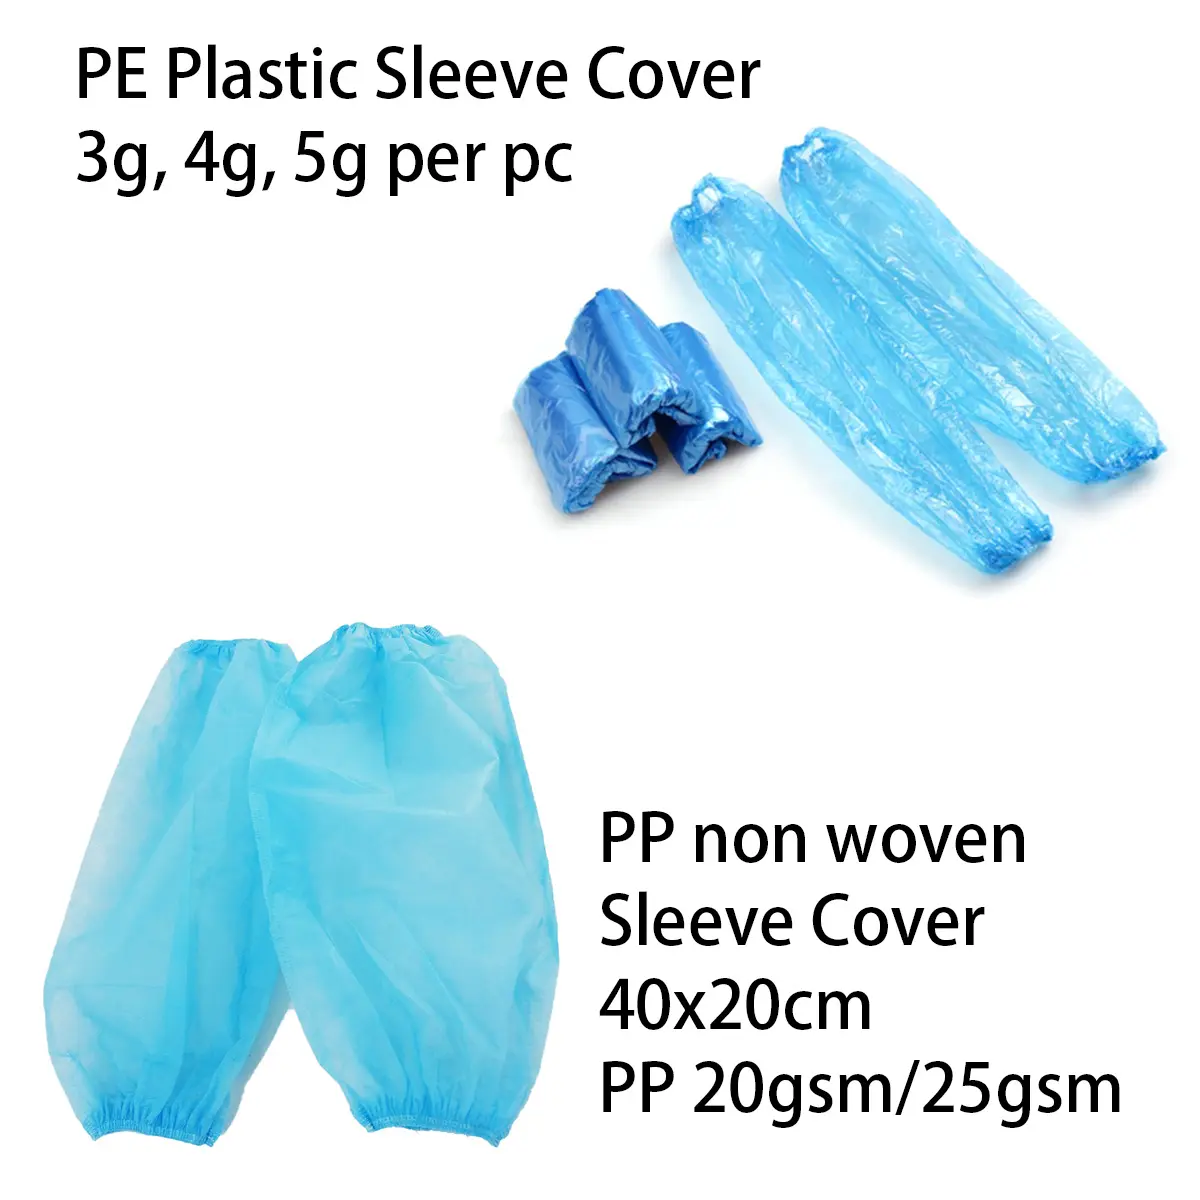 Пластиковый одноразовый синий PE/CPE прозрачный рукав крышка ldpe водонепроницаемый чехол для рук